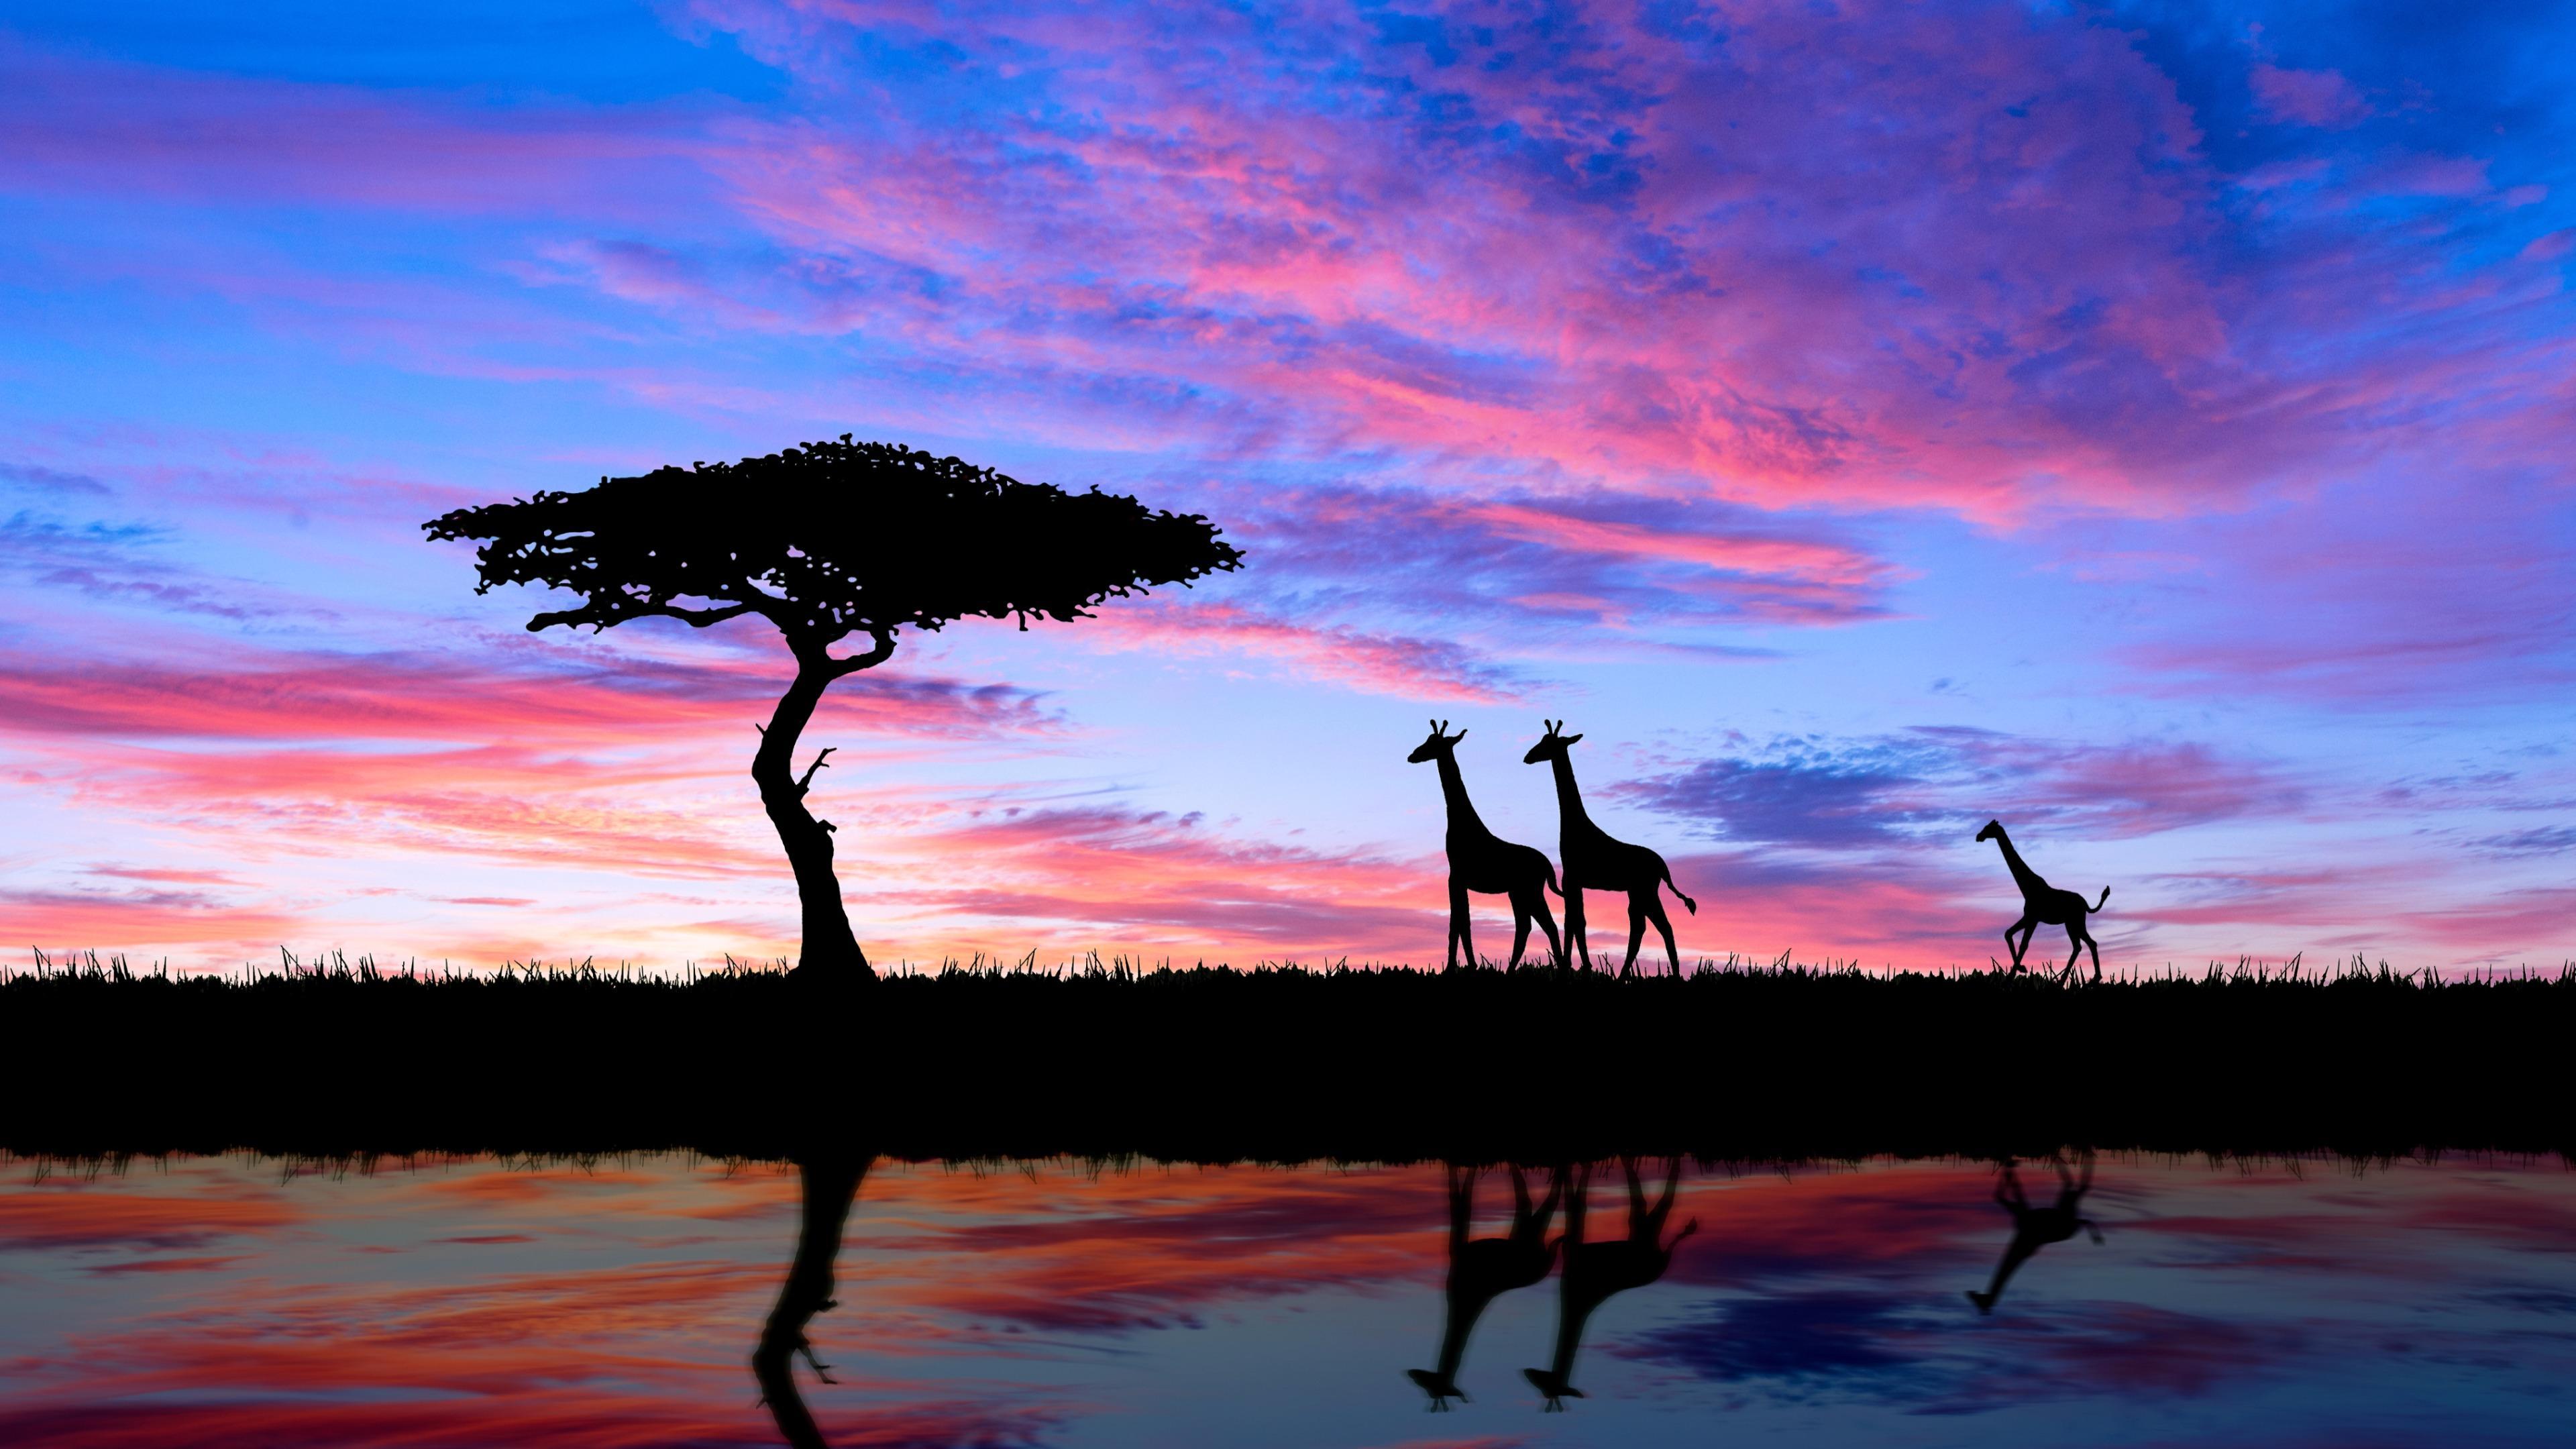 Giraffes in African Sunset 4k Ultra HD Wallpapers